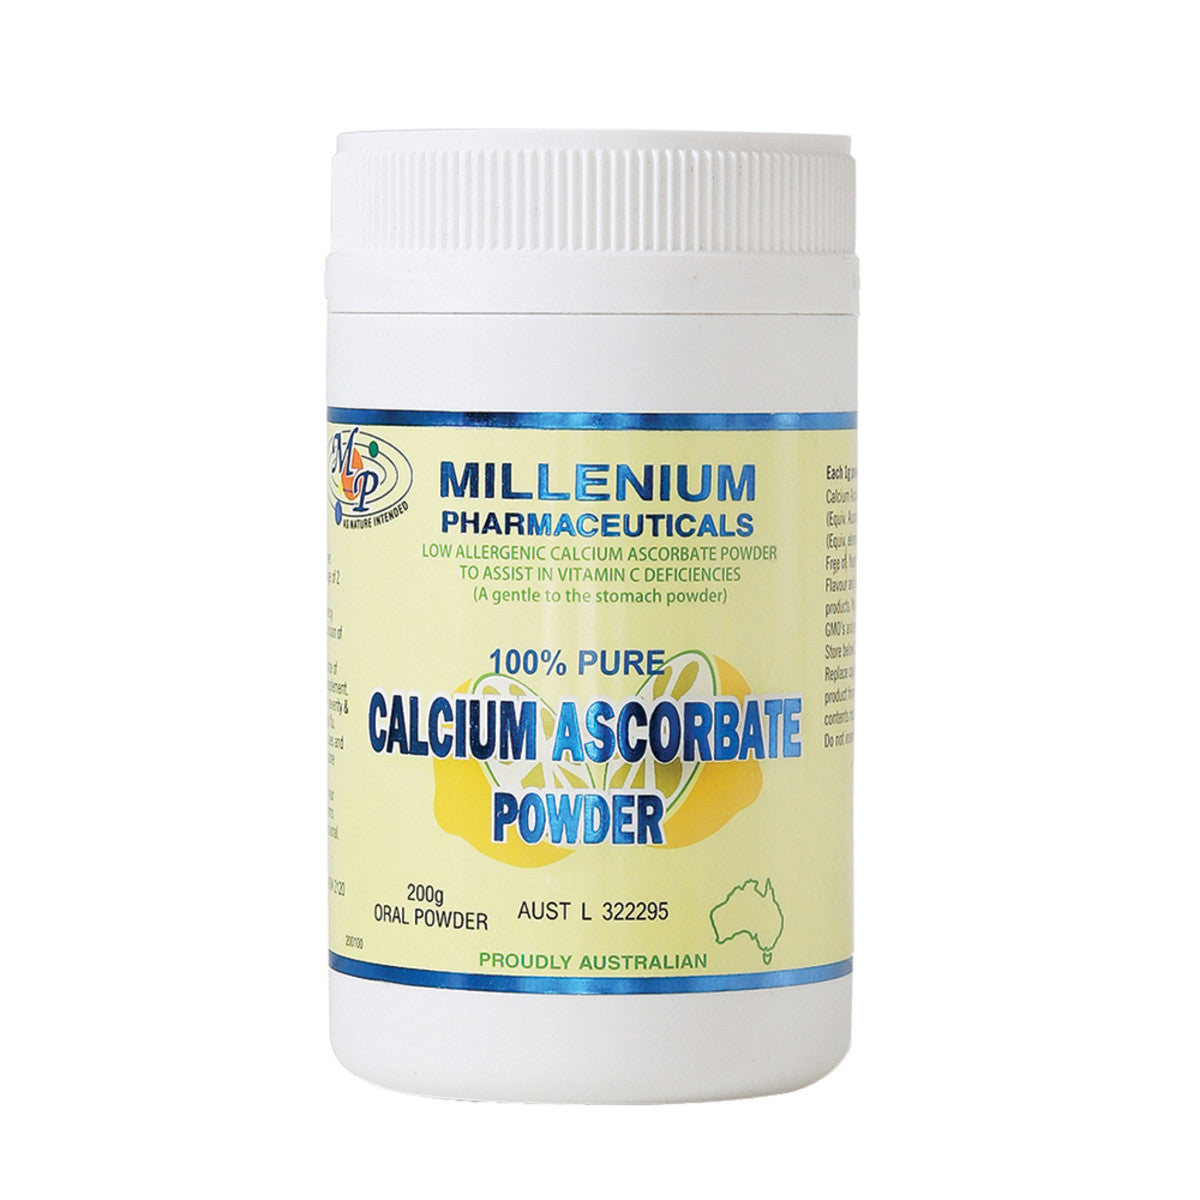 MILLENIUM PHARMACEUTICALS Calcium Ascorbate Oral Powder 200g